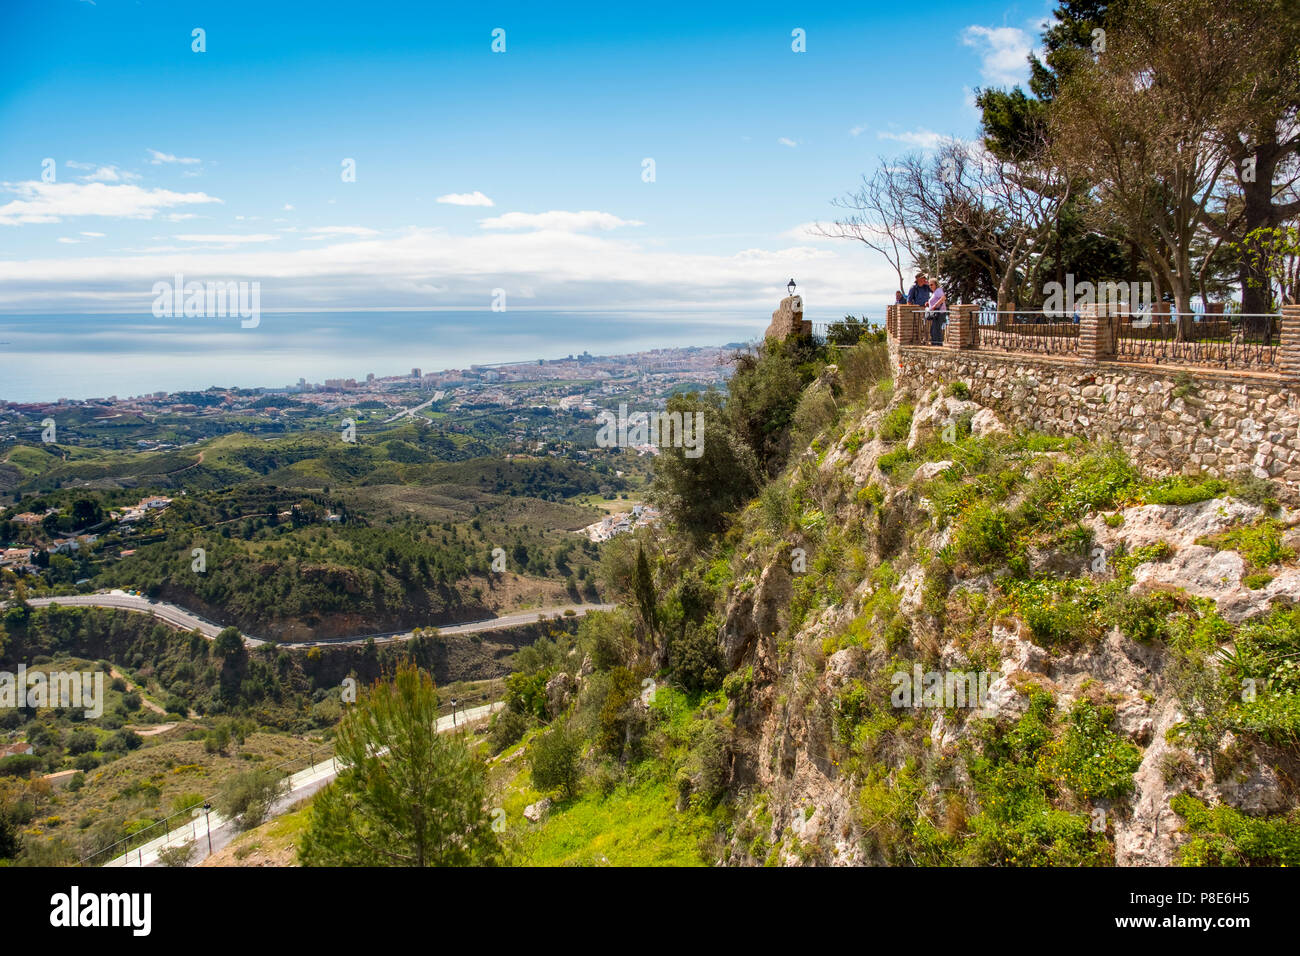 Antico muro arabo, vista panoramica e giardini. Villaggio bianco di Mijas, provincia di Malaga, Costa del Sol, Andalusia, Spagna Europa Foto Stock